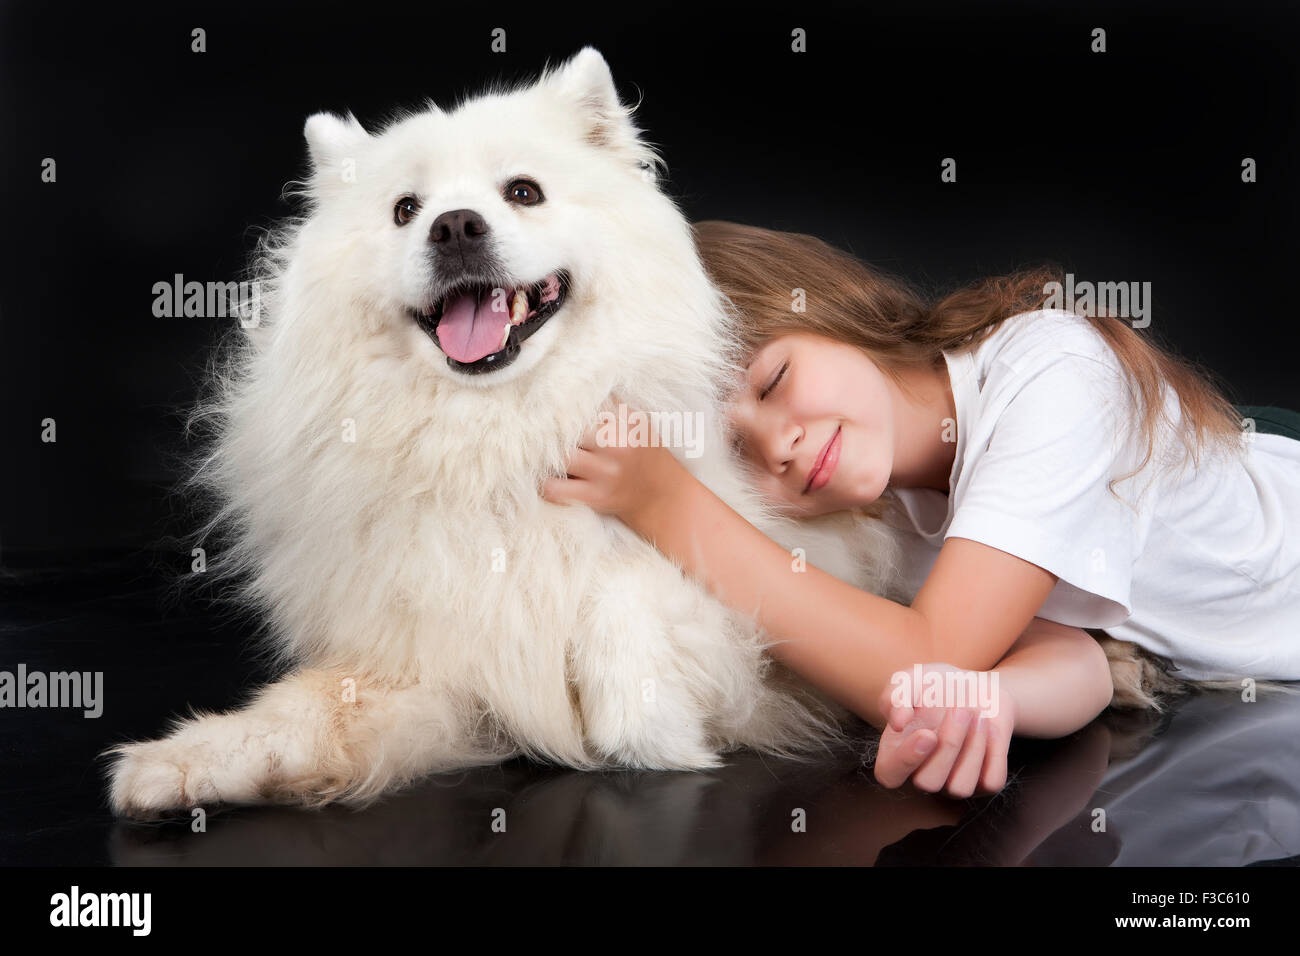 Hund Tier Kind Mädchen kleine reinrassige Tiere weibliche Kindheit Freundschaft Person Farbe Glück spielen kaukasischen Nahaufnahme Stockfoto